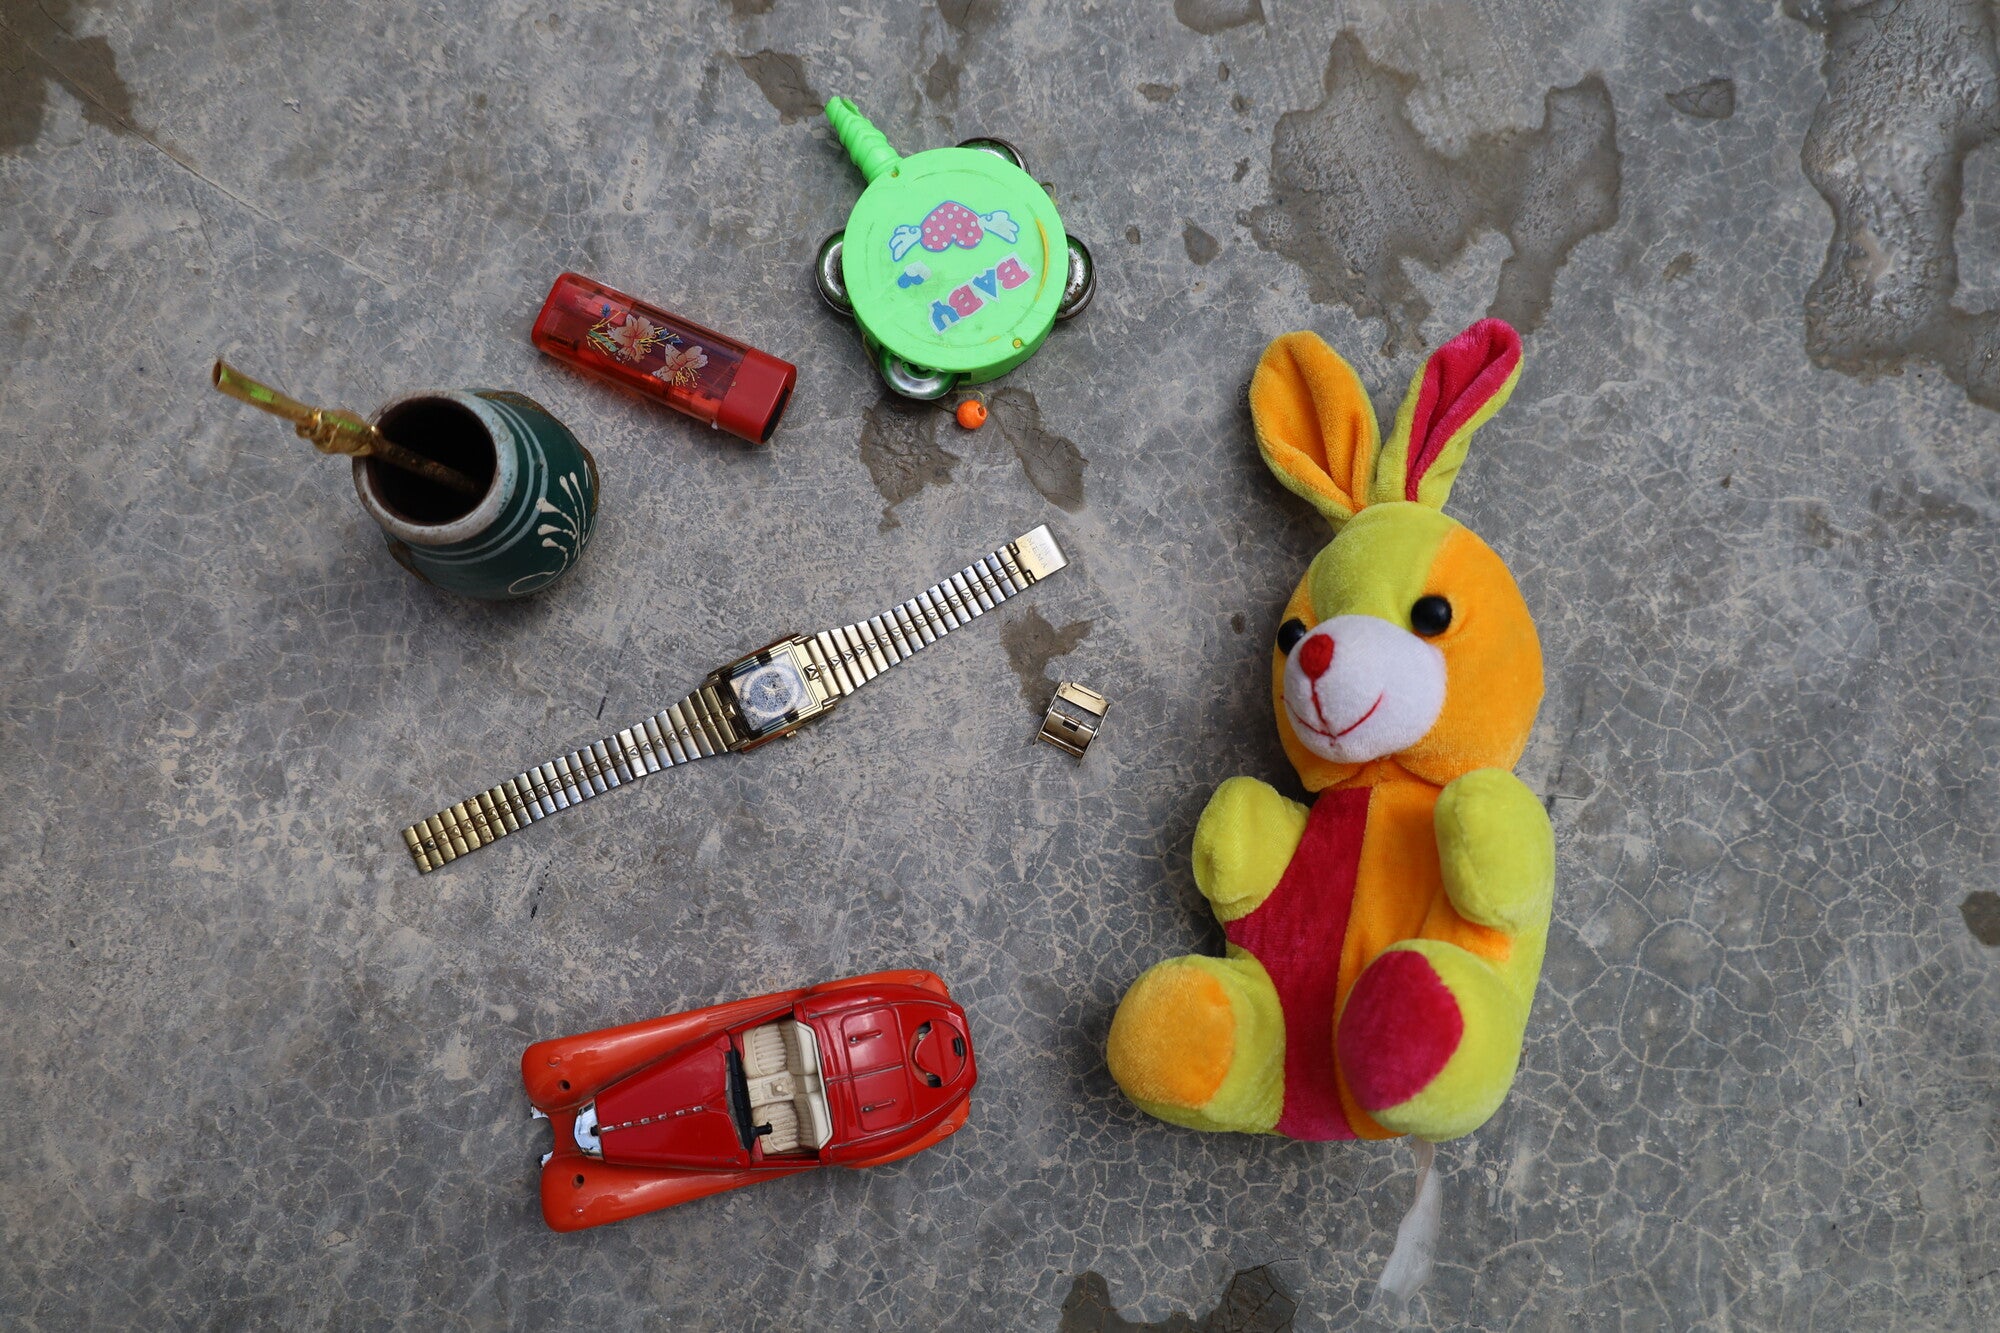 Un assortiment d'objets, dont une montre, un lapin en peluche, une petite voiture et une tasse avec de la paille.